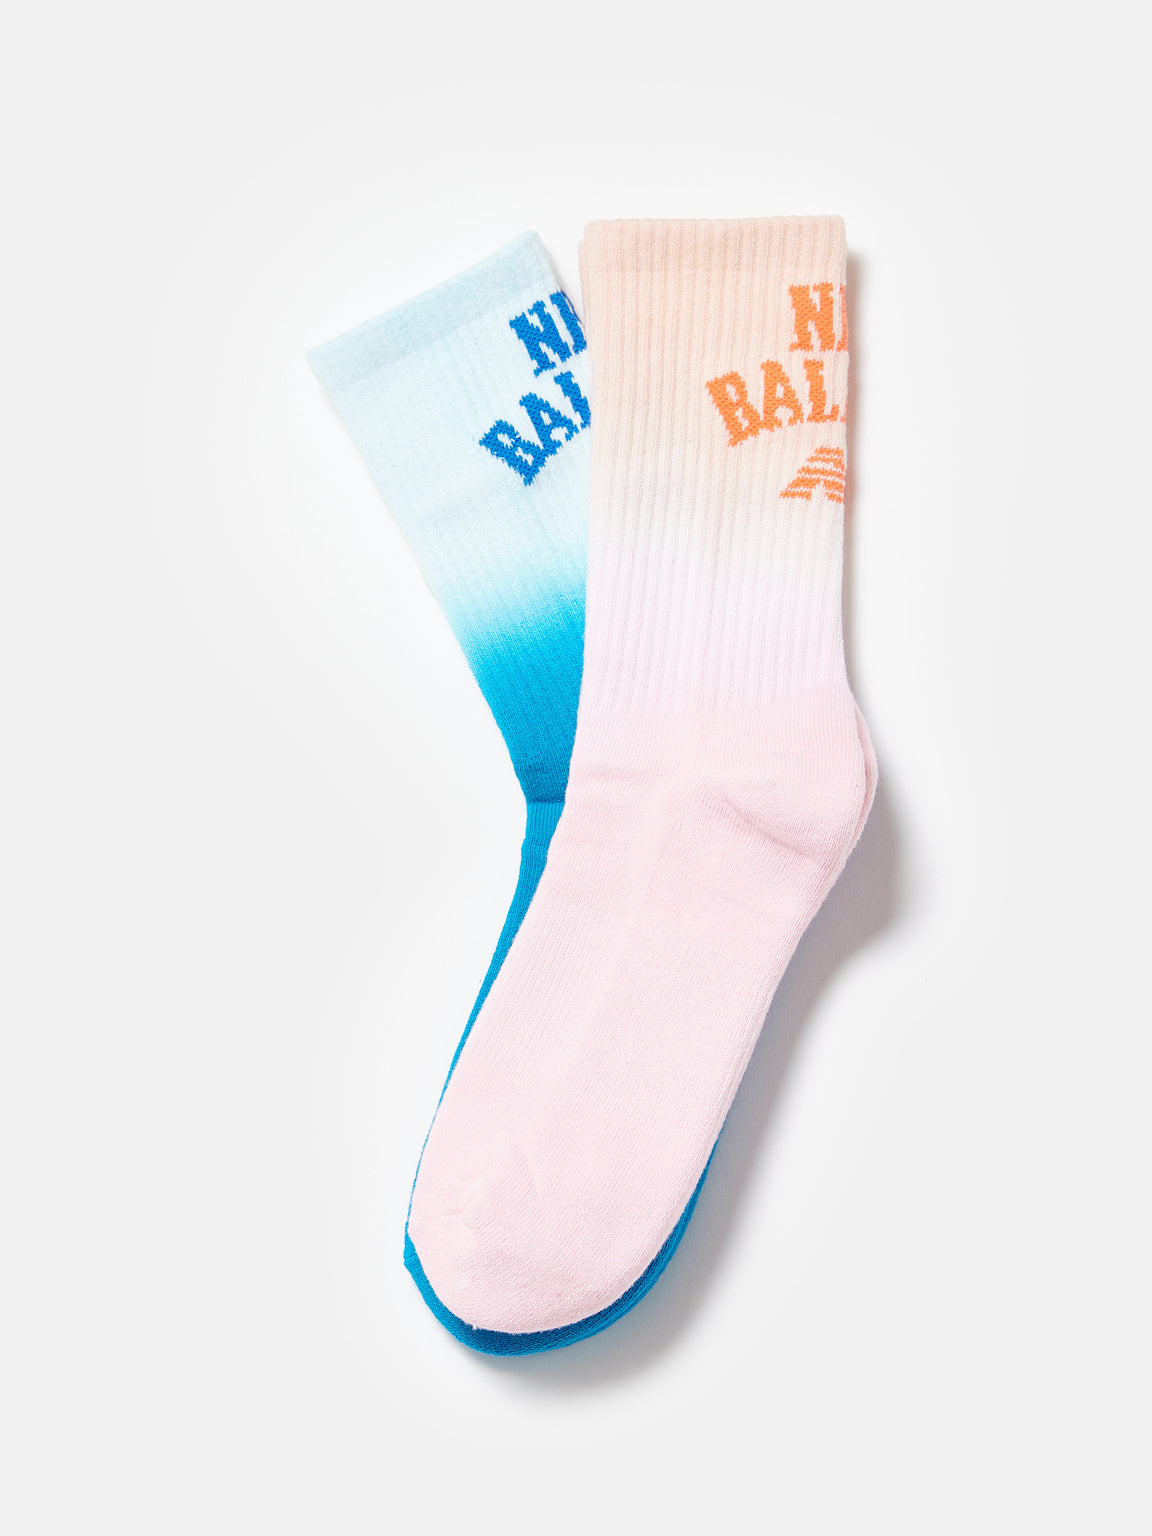 New Balance | Tie Dye Crew Socks For Kids | Bellerose E-shop